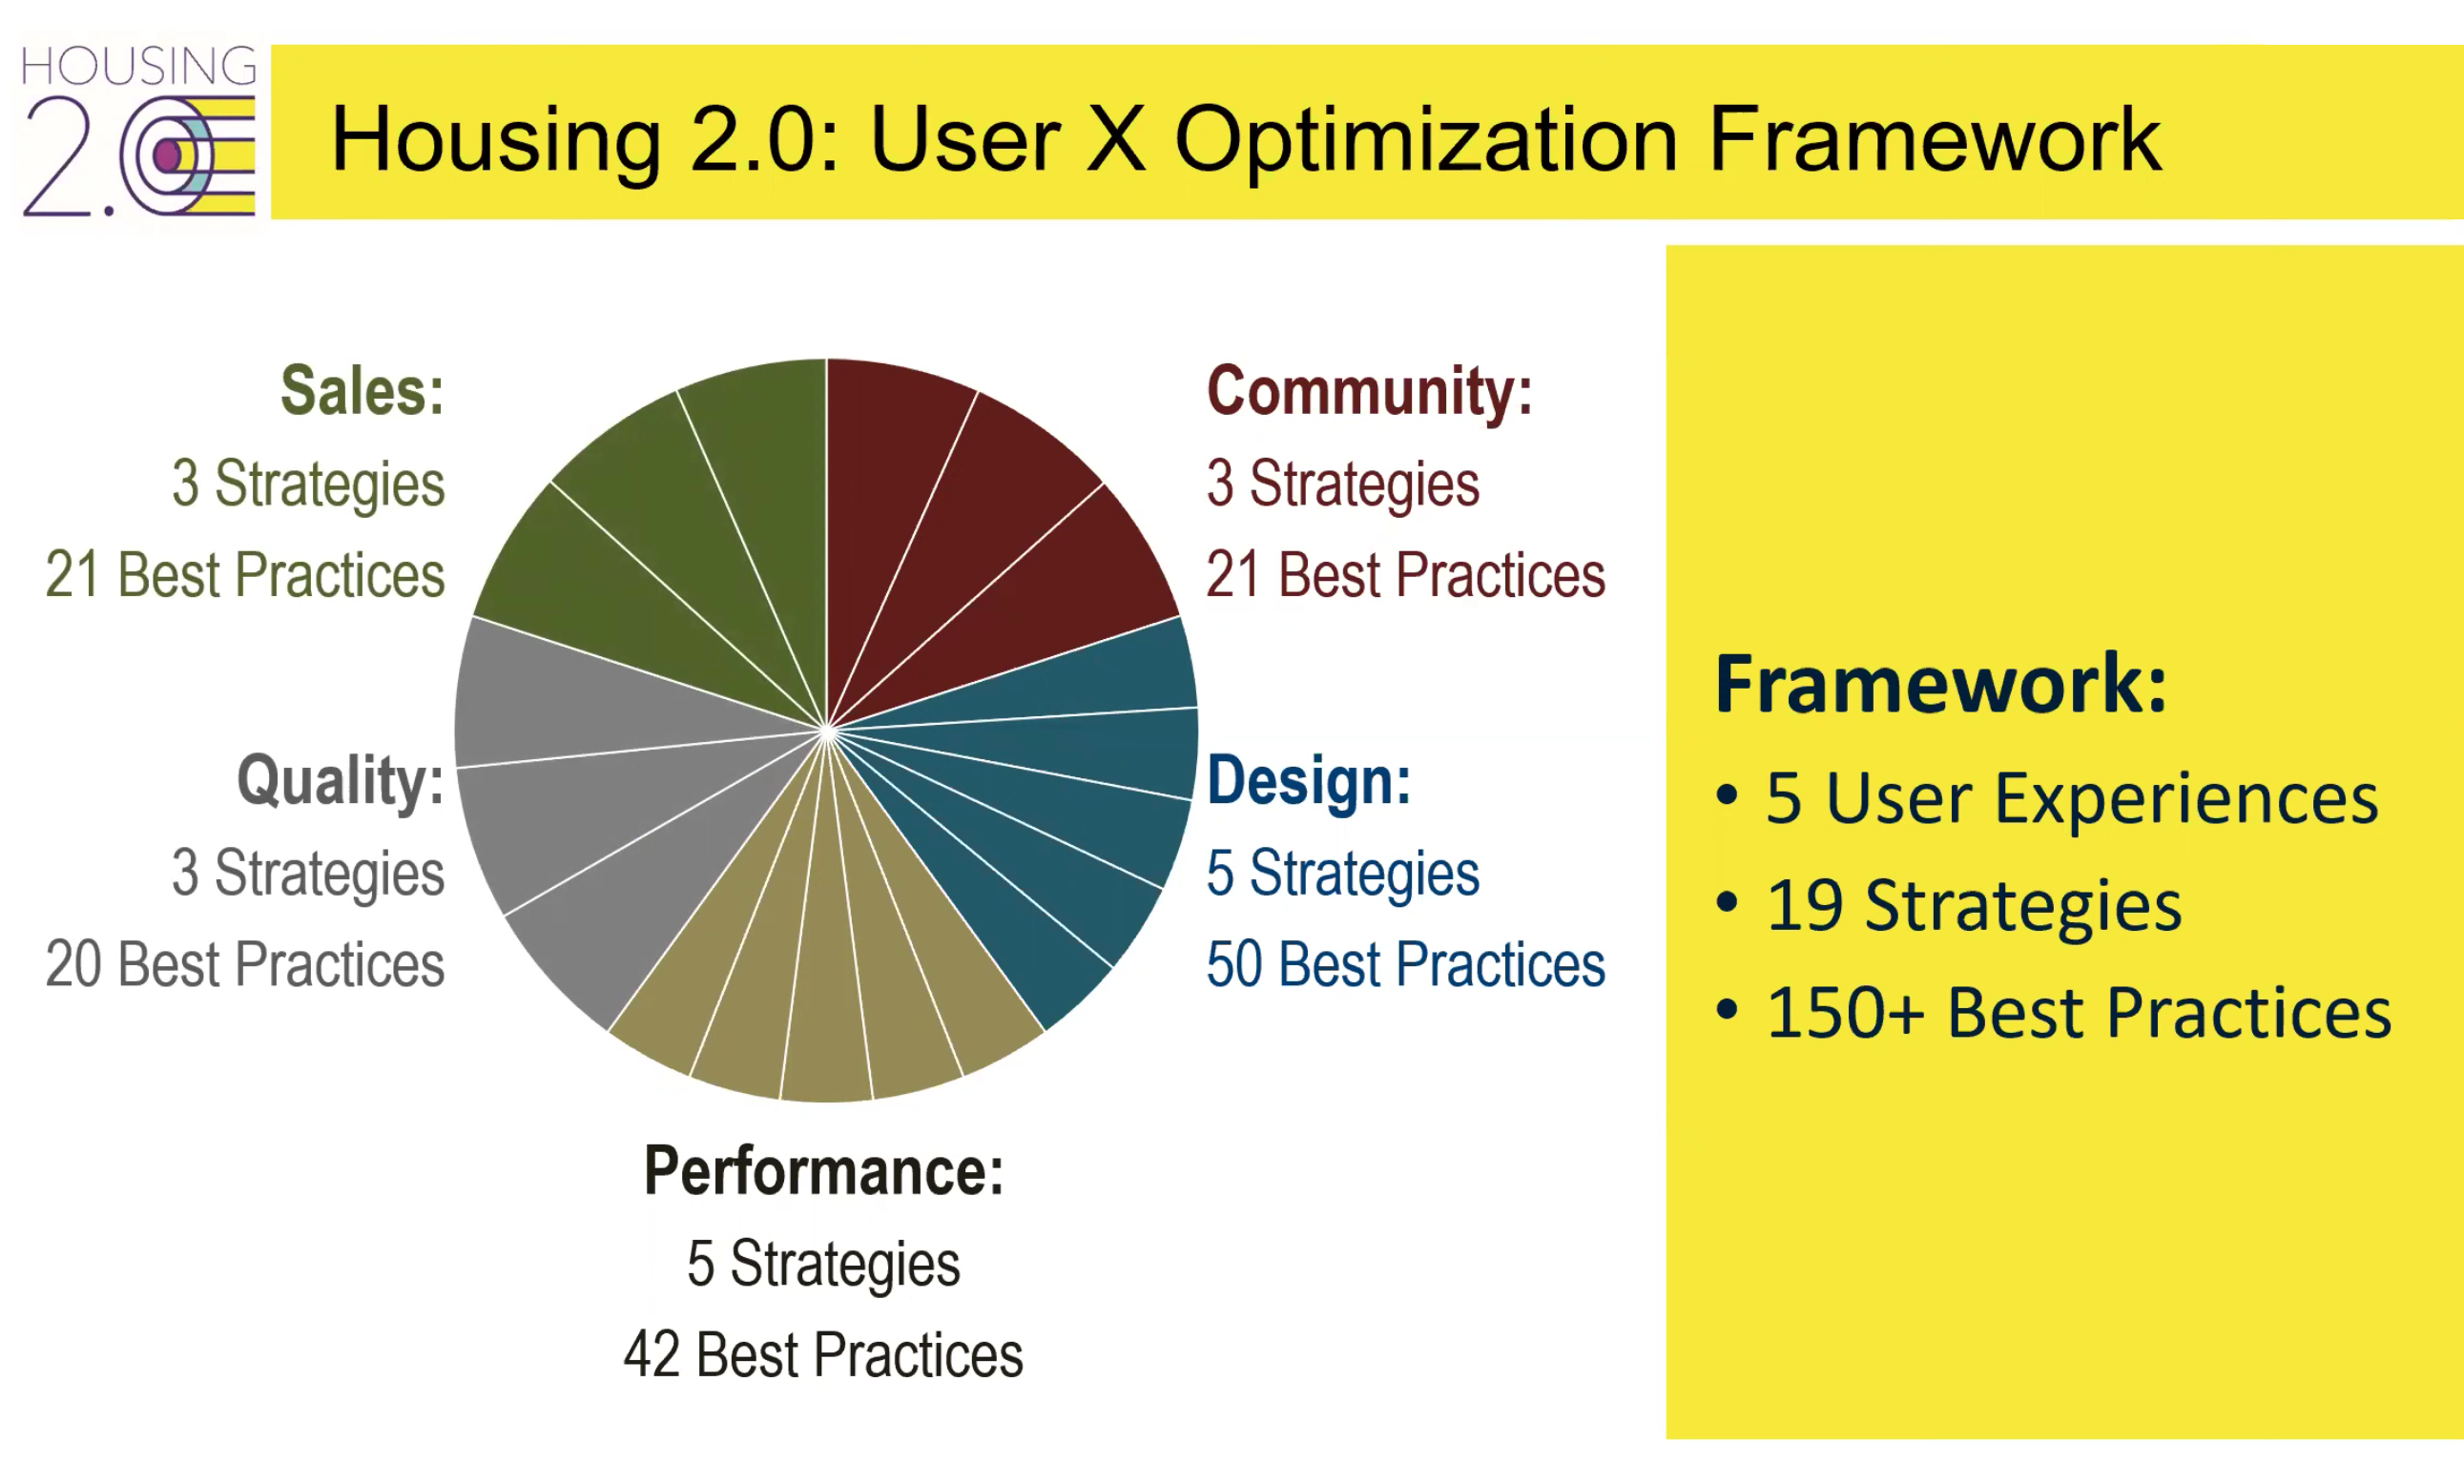 Housing 2.0 user experience optimization framework chart